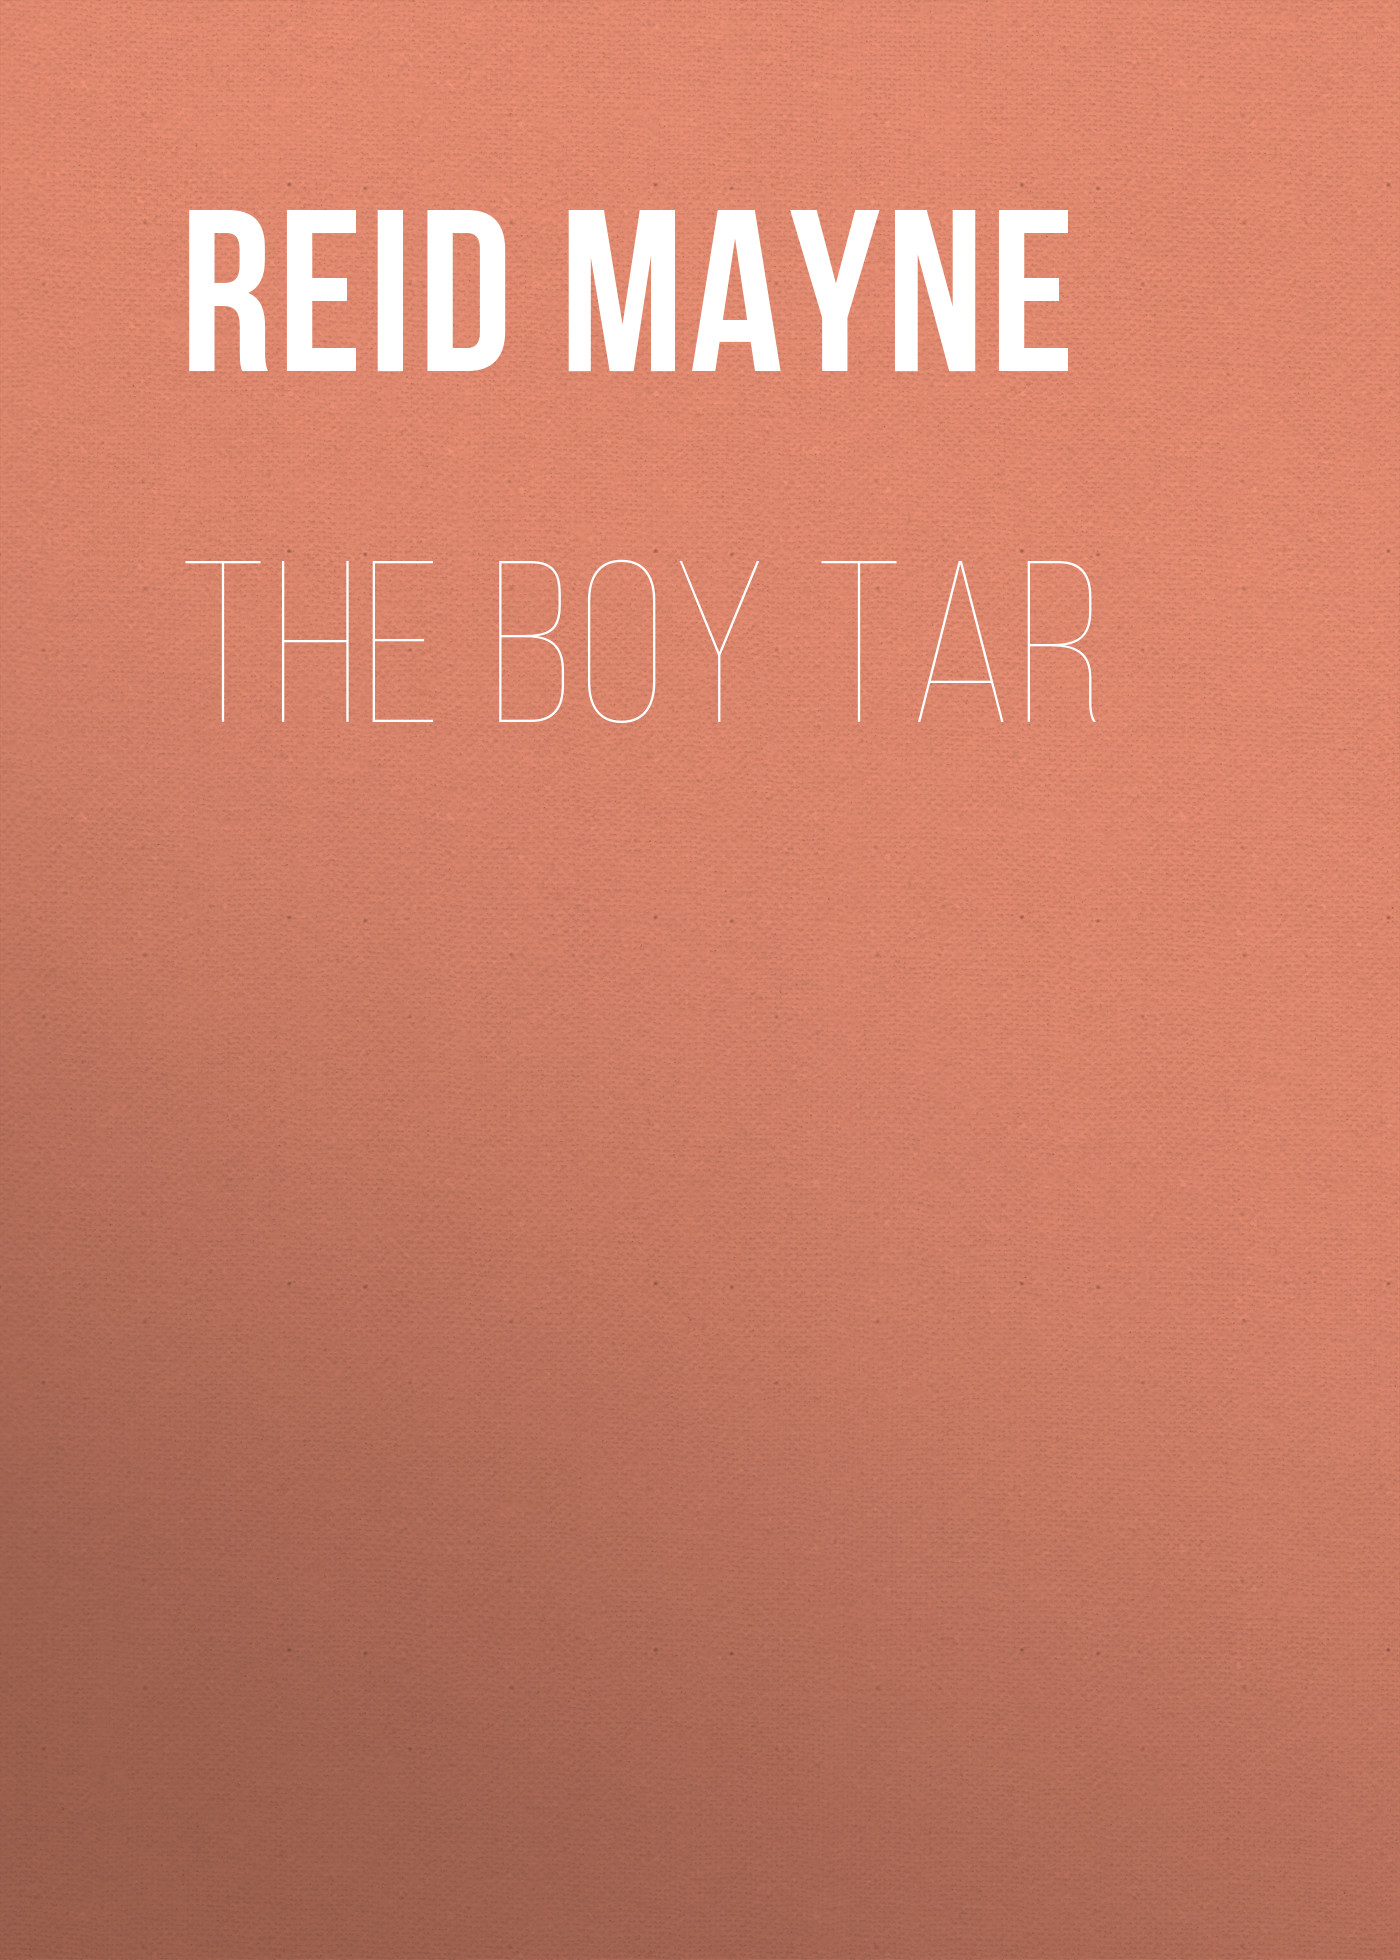 Книга The Boy Tar из серии , созданная Mayne Reid, может относится к жанру Литература 19 века, Зарубежная старинная литература, Зарубежная классика, Зарубежные детские книги. Стоимость электронной книги The Boy Tar с идентификатором 25451292 составляет 0 руб.